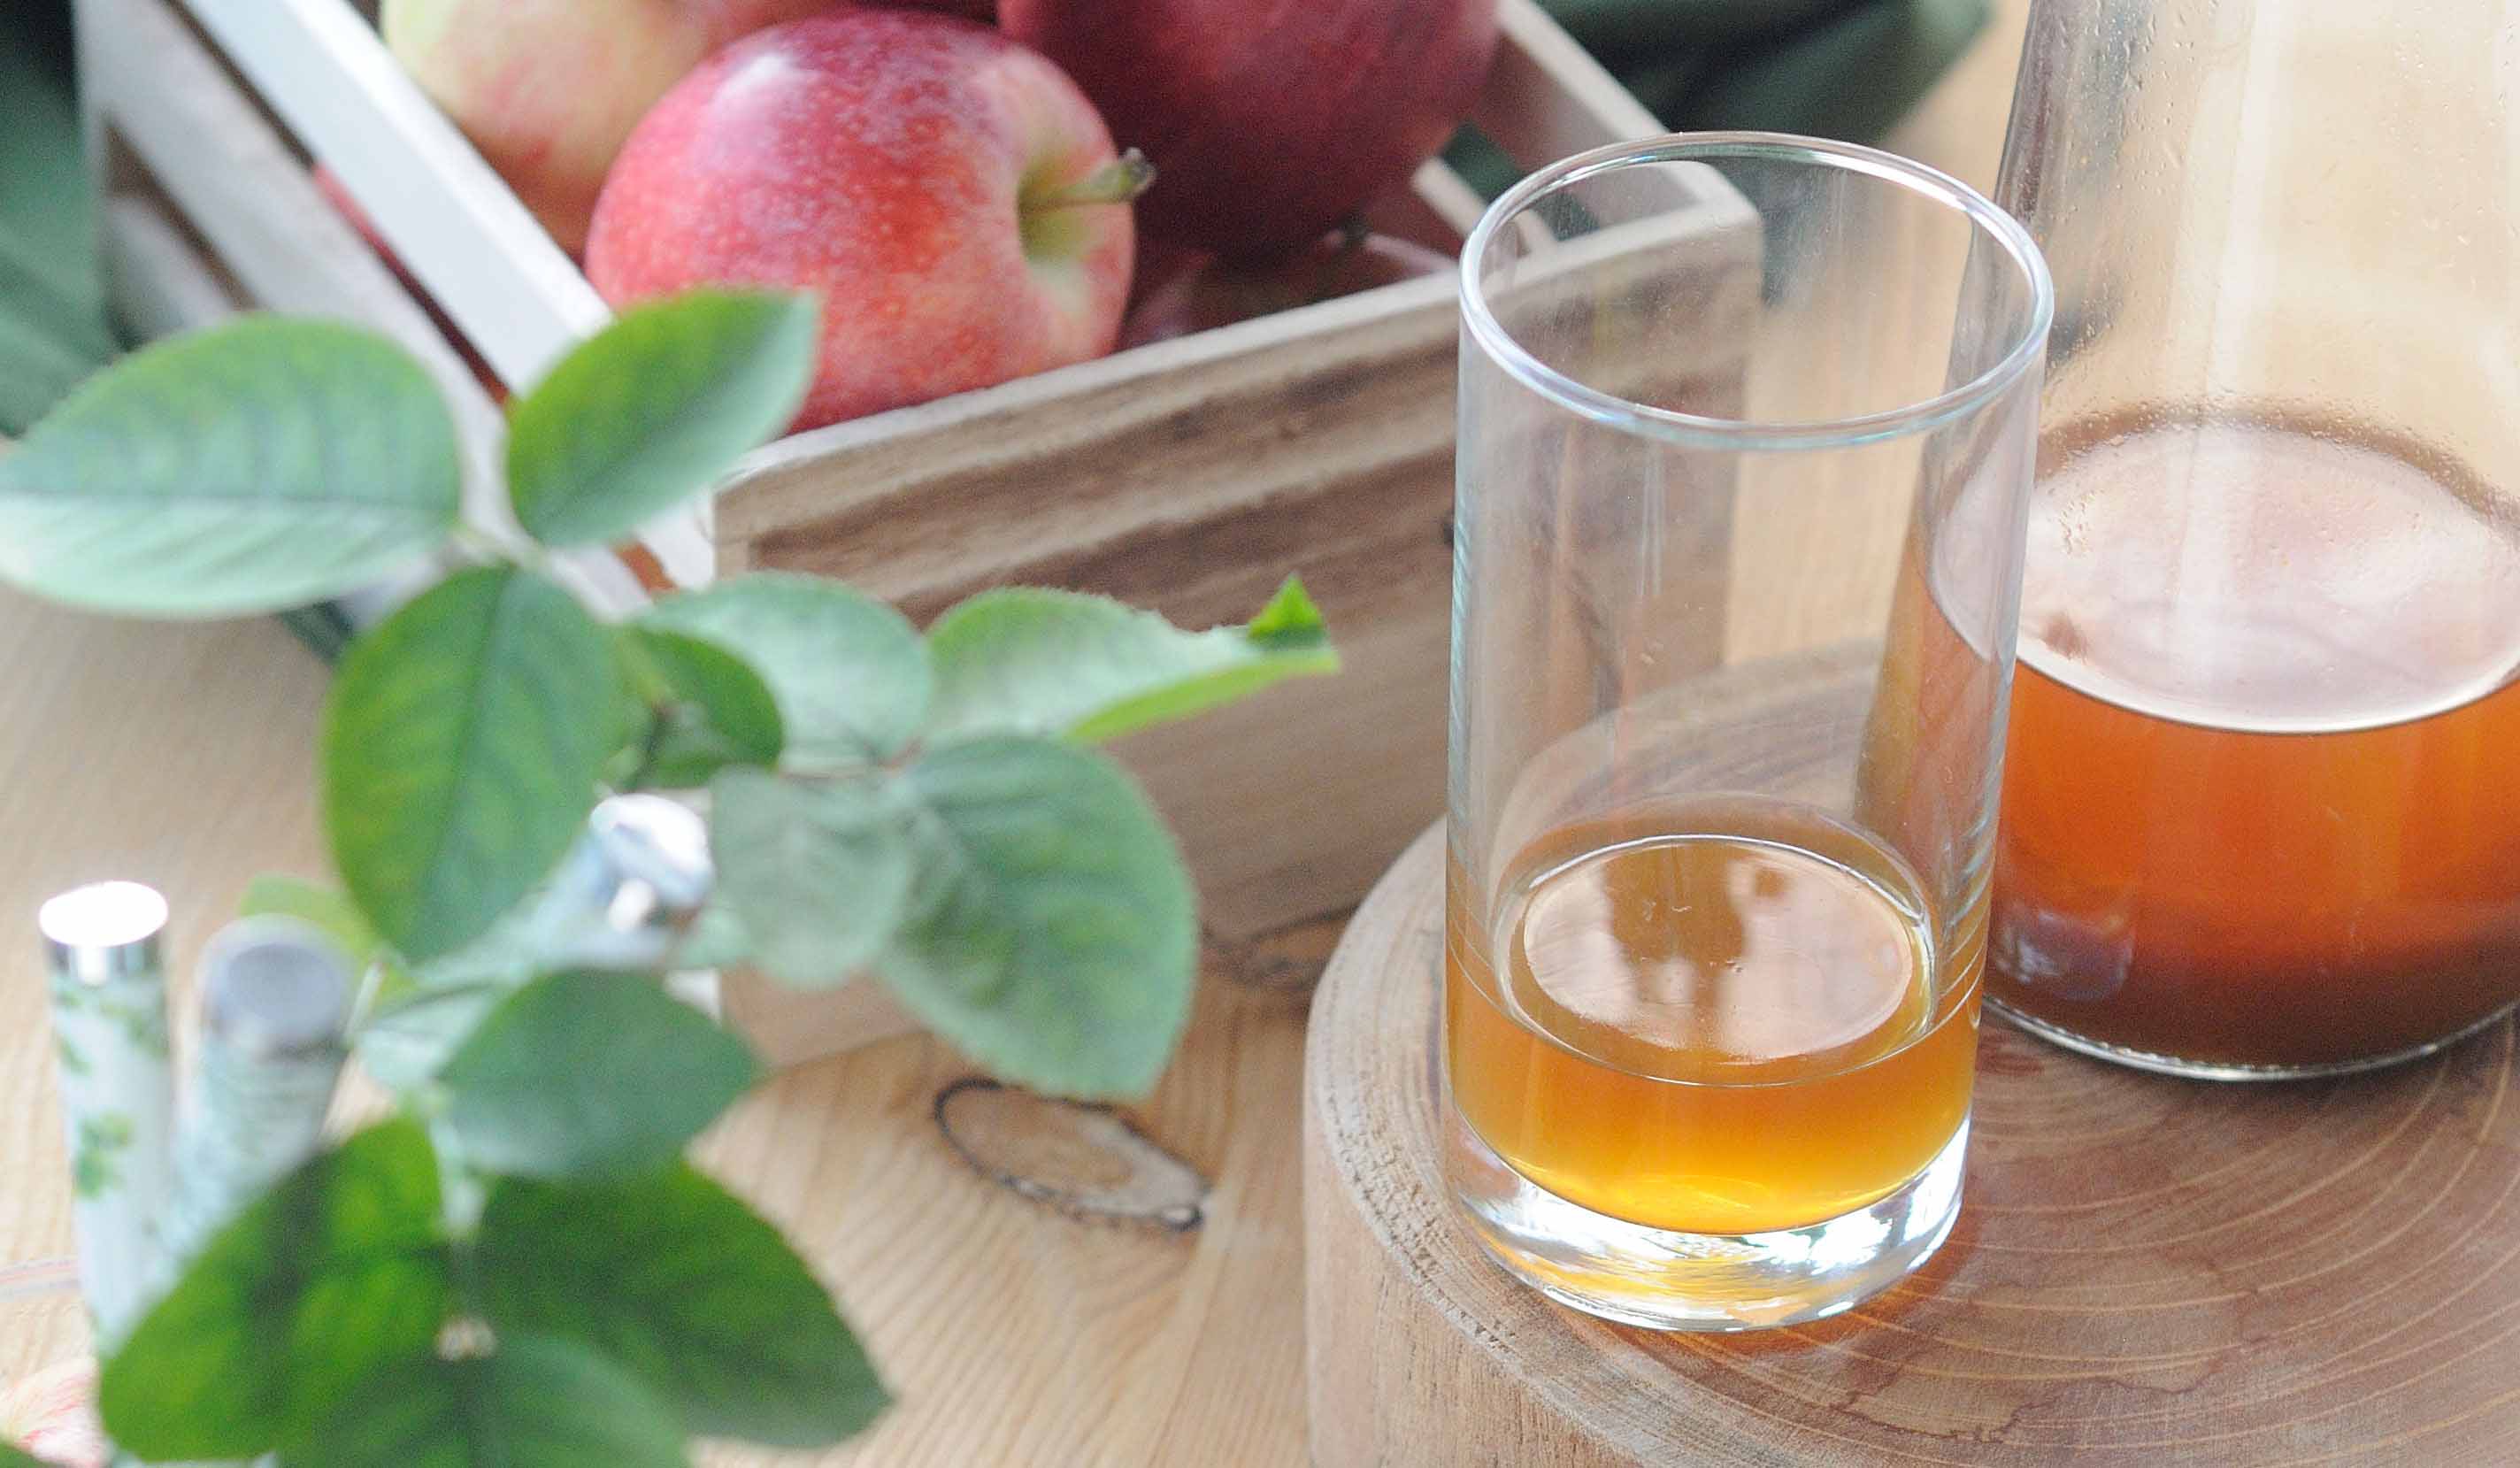 天然發酵蘋果醋 肥丁的釀醋之旅 從抓醋酸菌開始【一】How to Make Raw Apple Cider Vinegar Starter